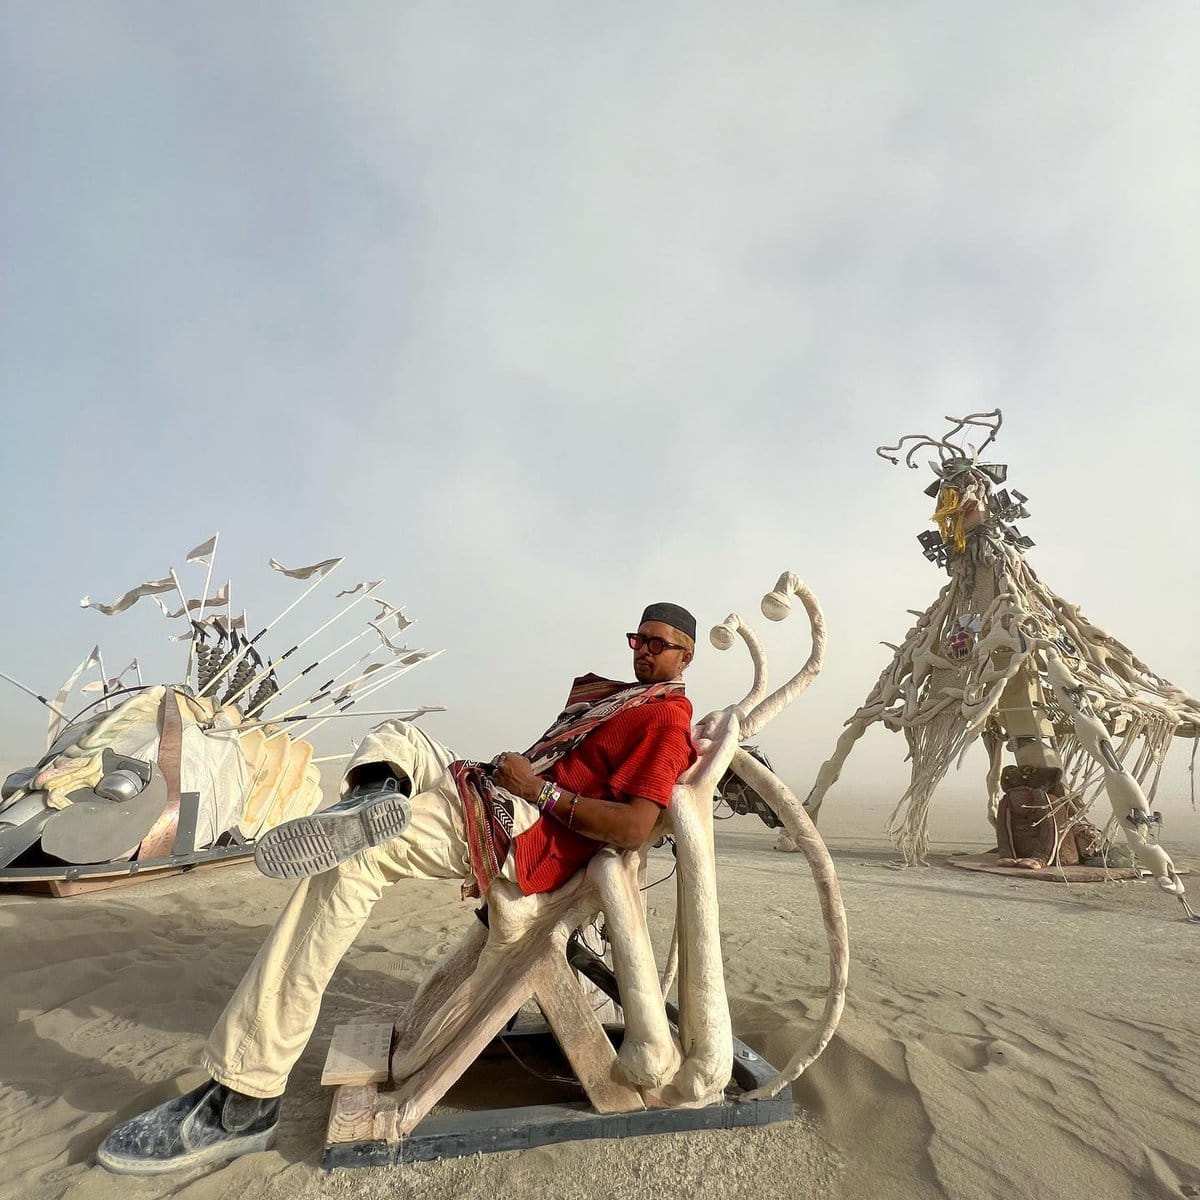 Огненный фестиваль Burning Man вернулся: 16 эпичных фотографий с самого горячего мероприятия планеты 53